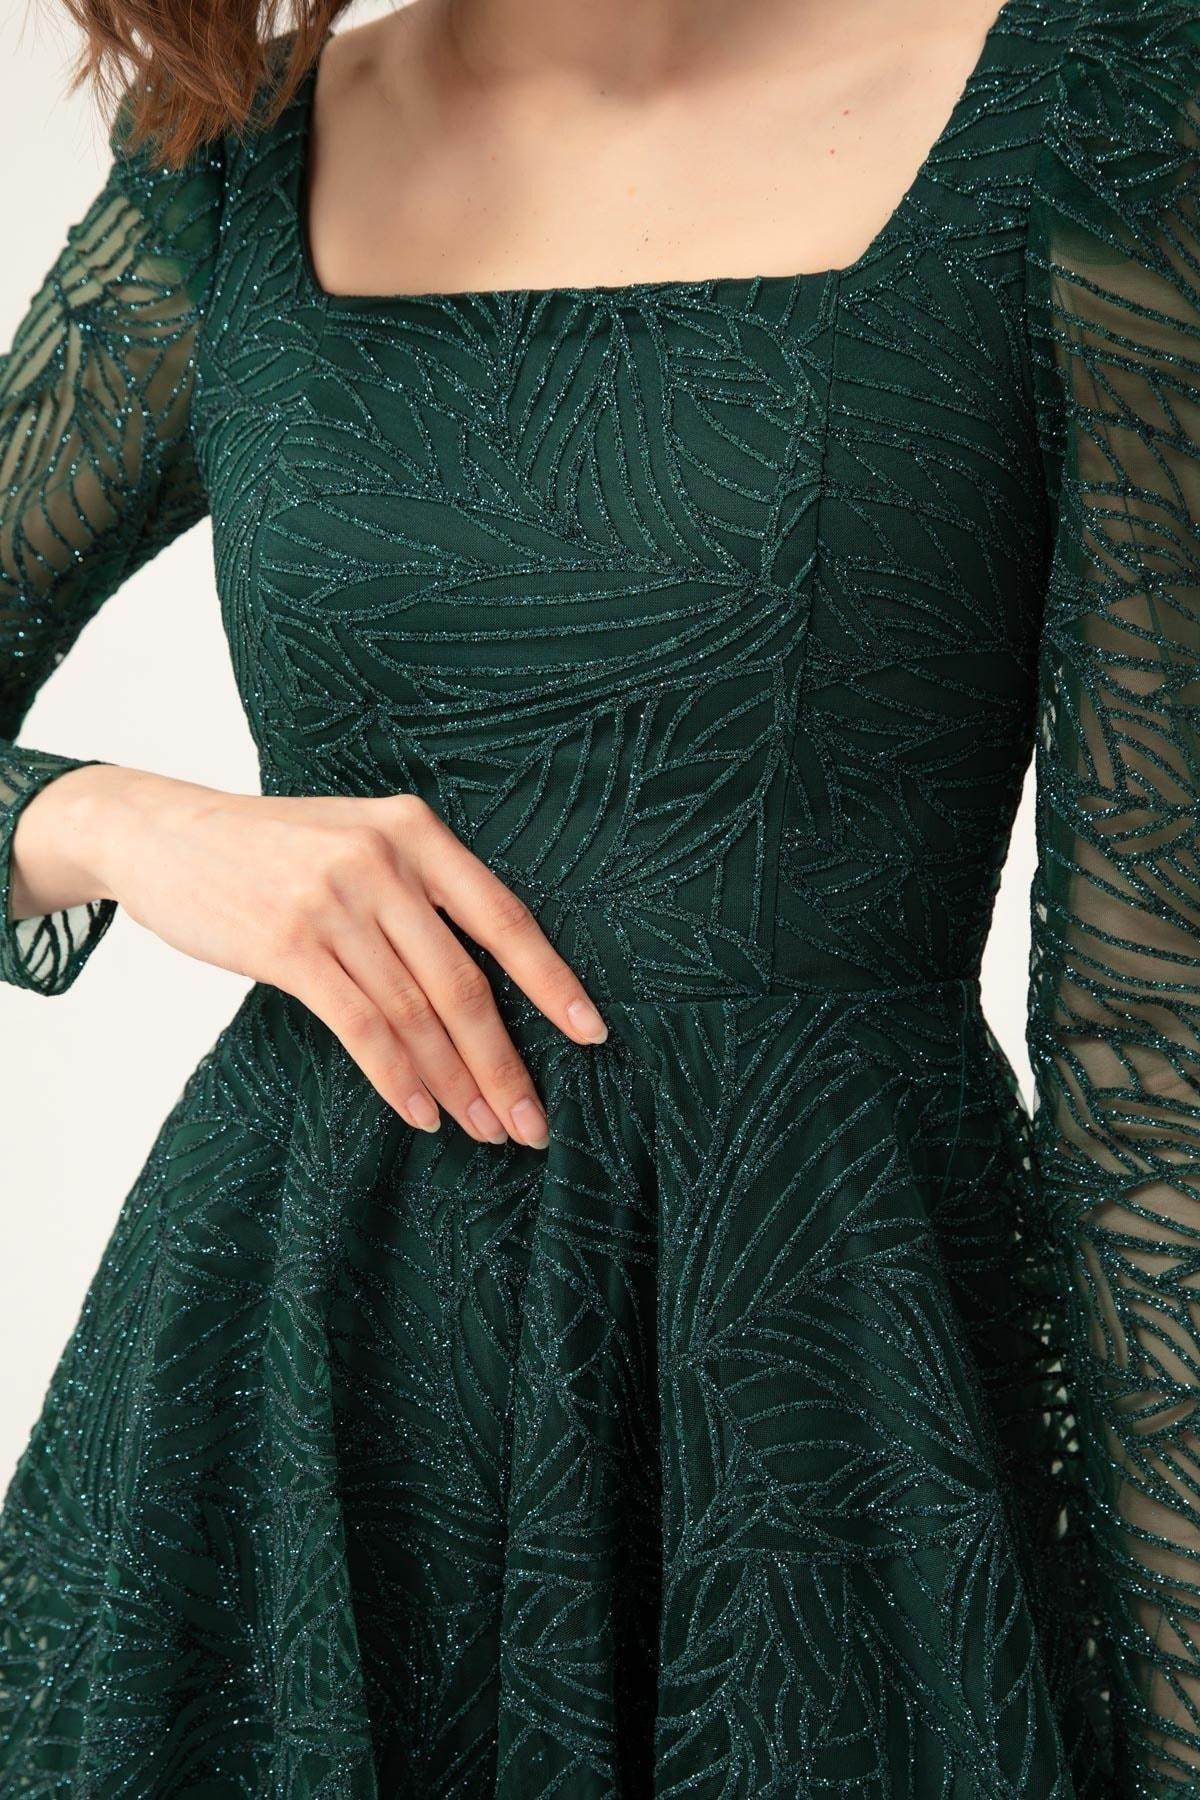 Lafaba - Green Square Neck Occasionwear Dress